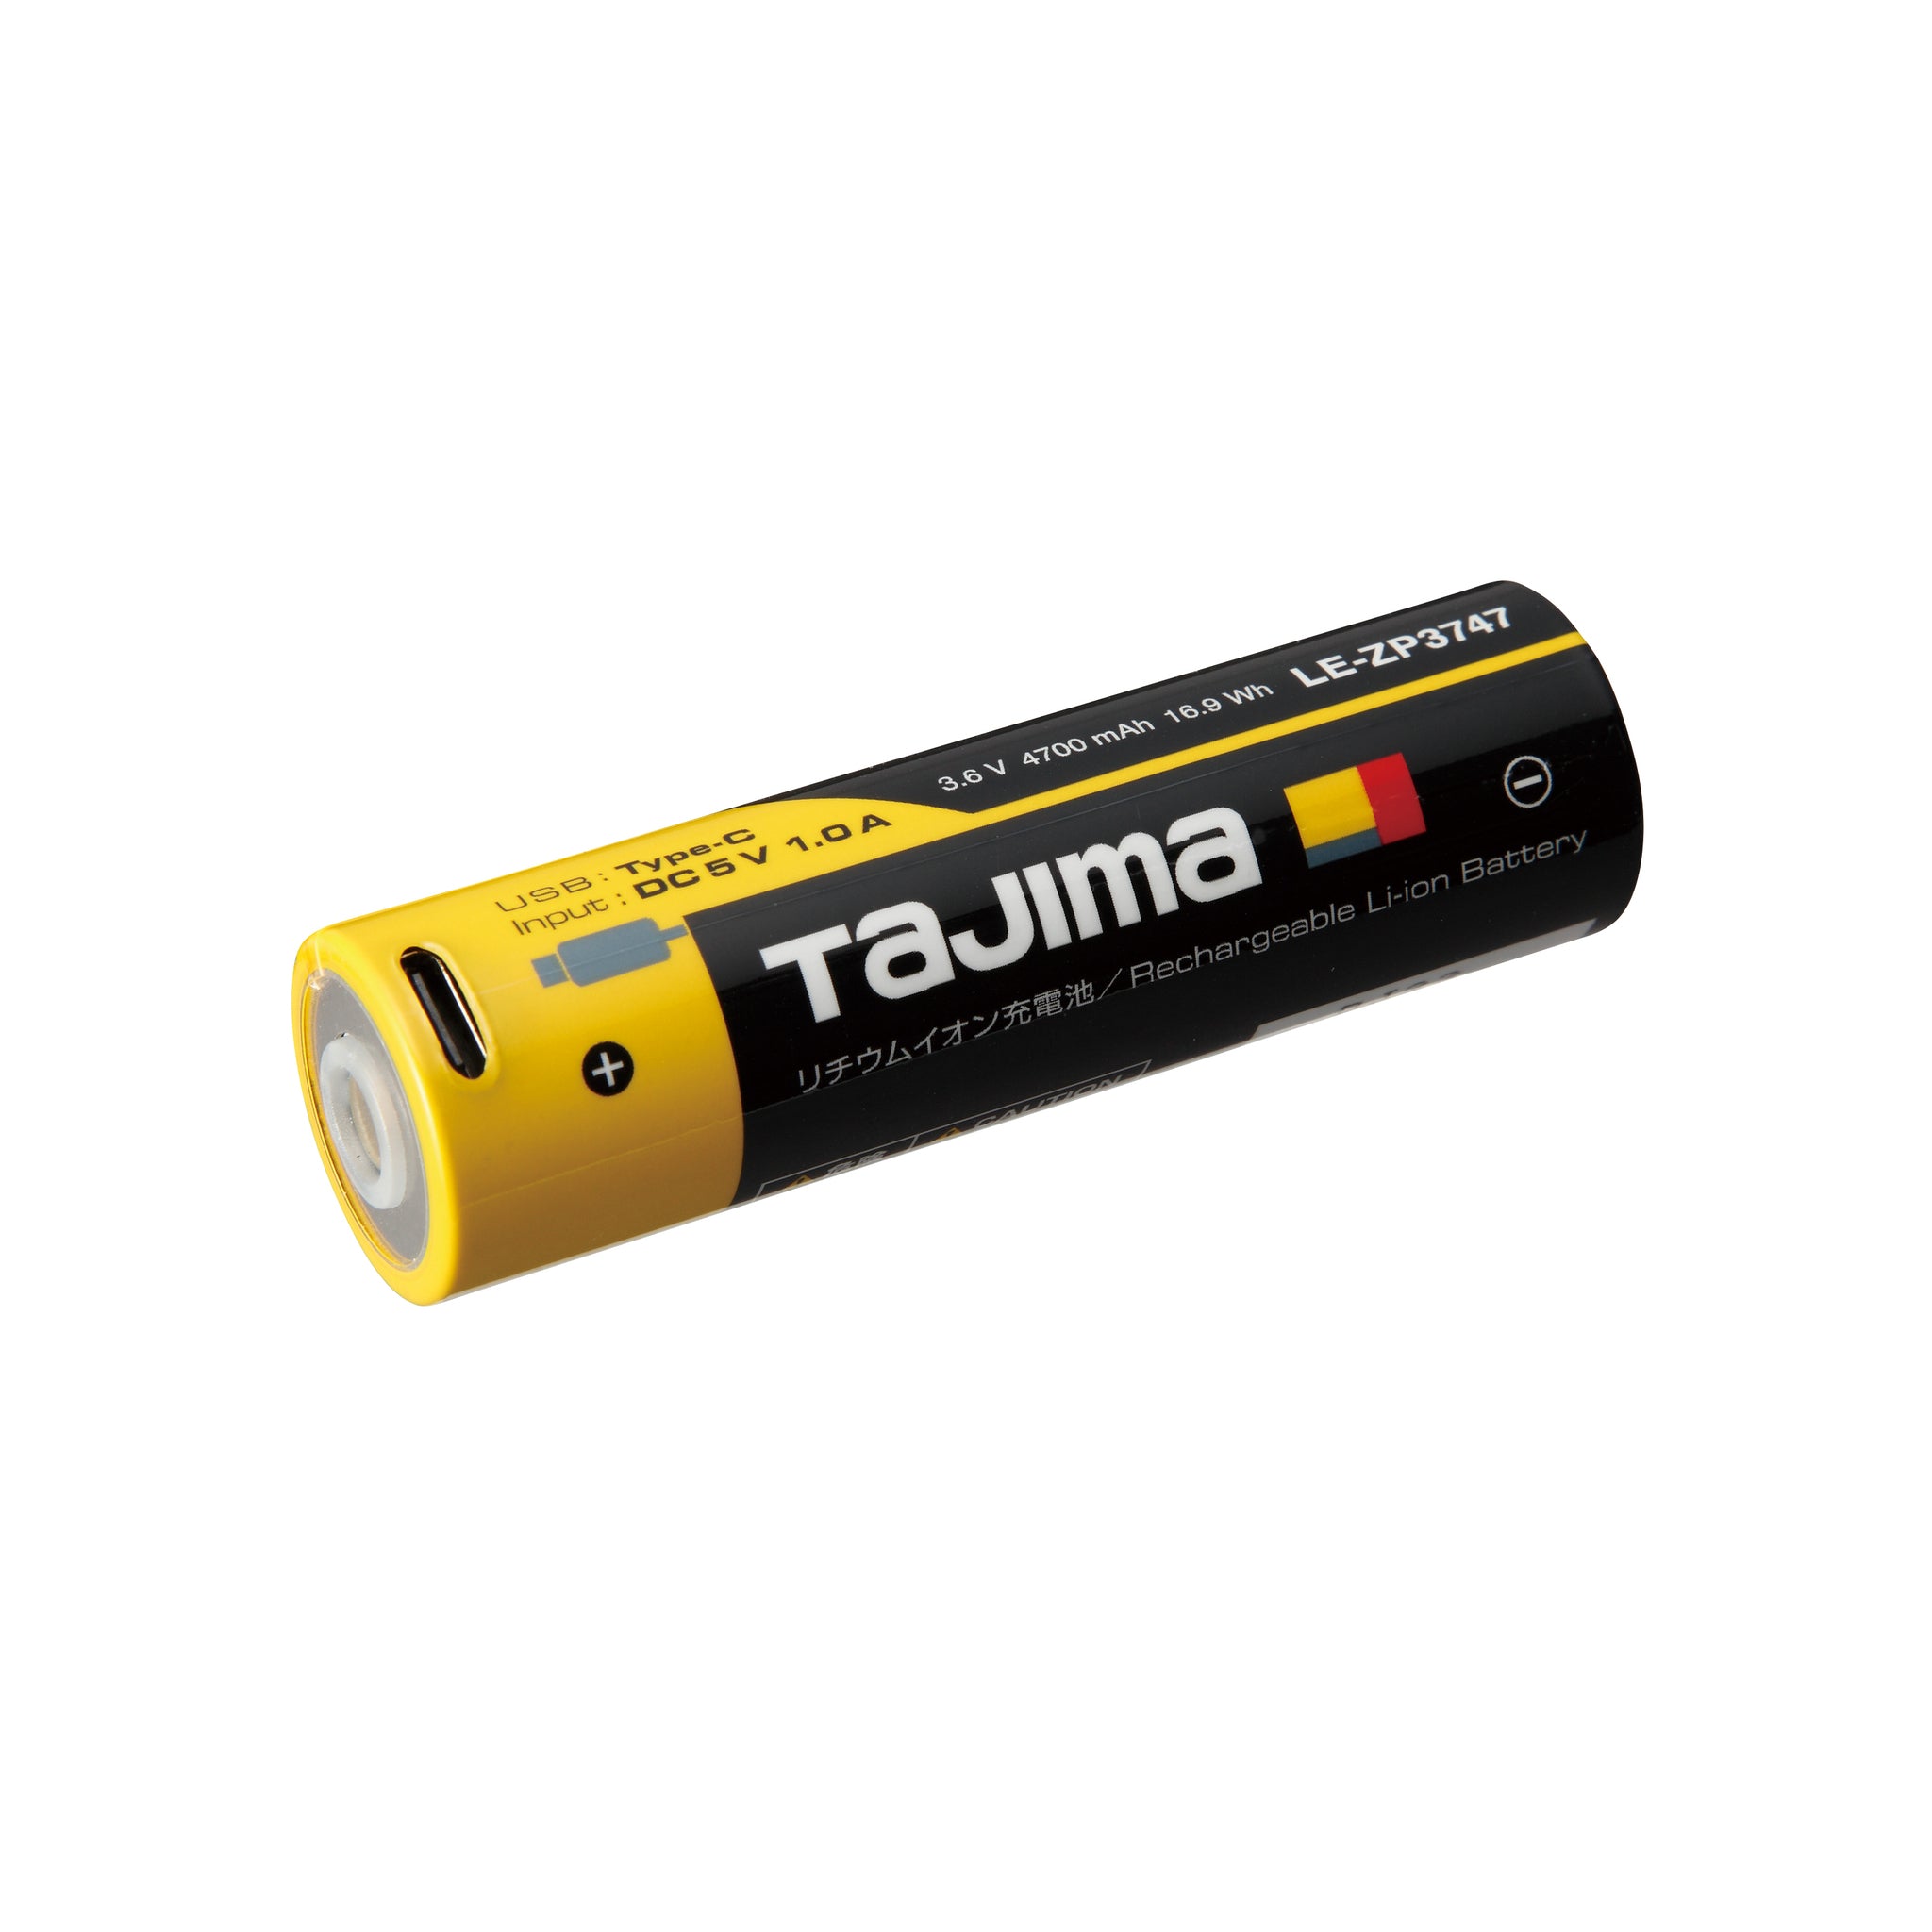 タジマ(Tajima) LED ヘッドライト キープジャスト 専用充電池セット